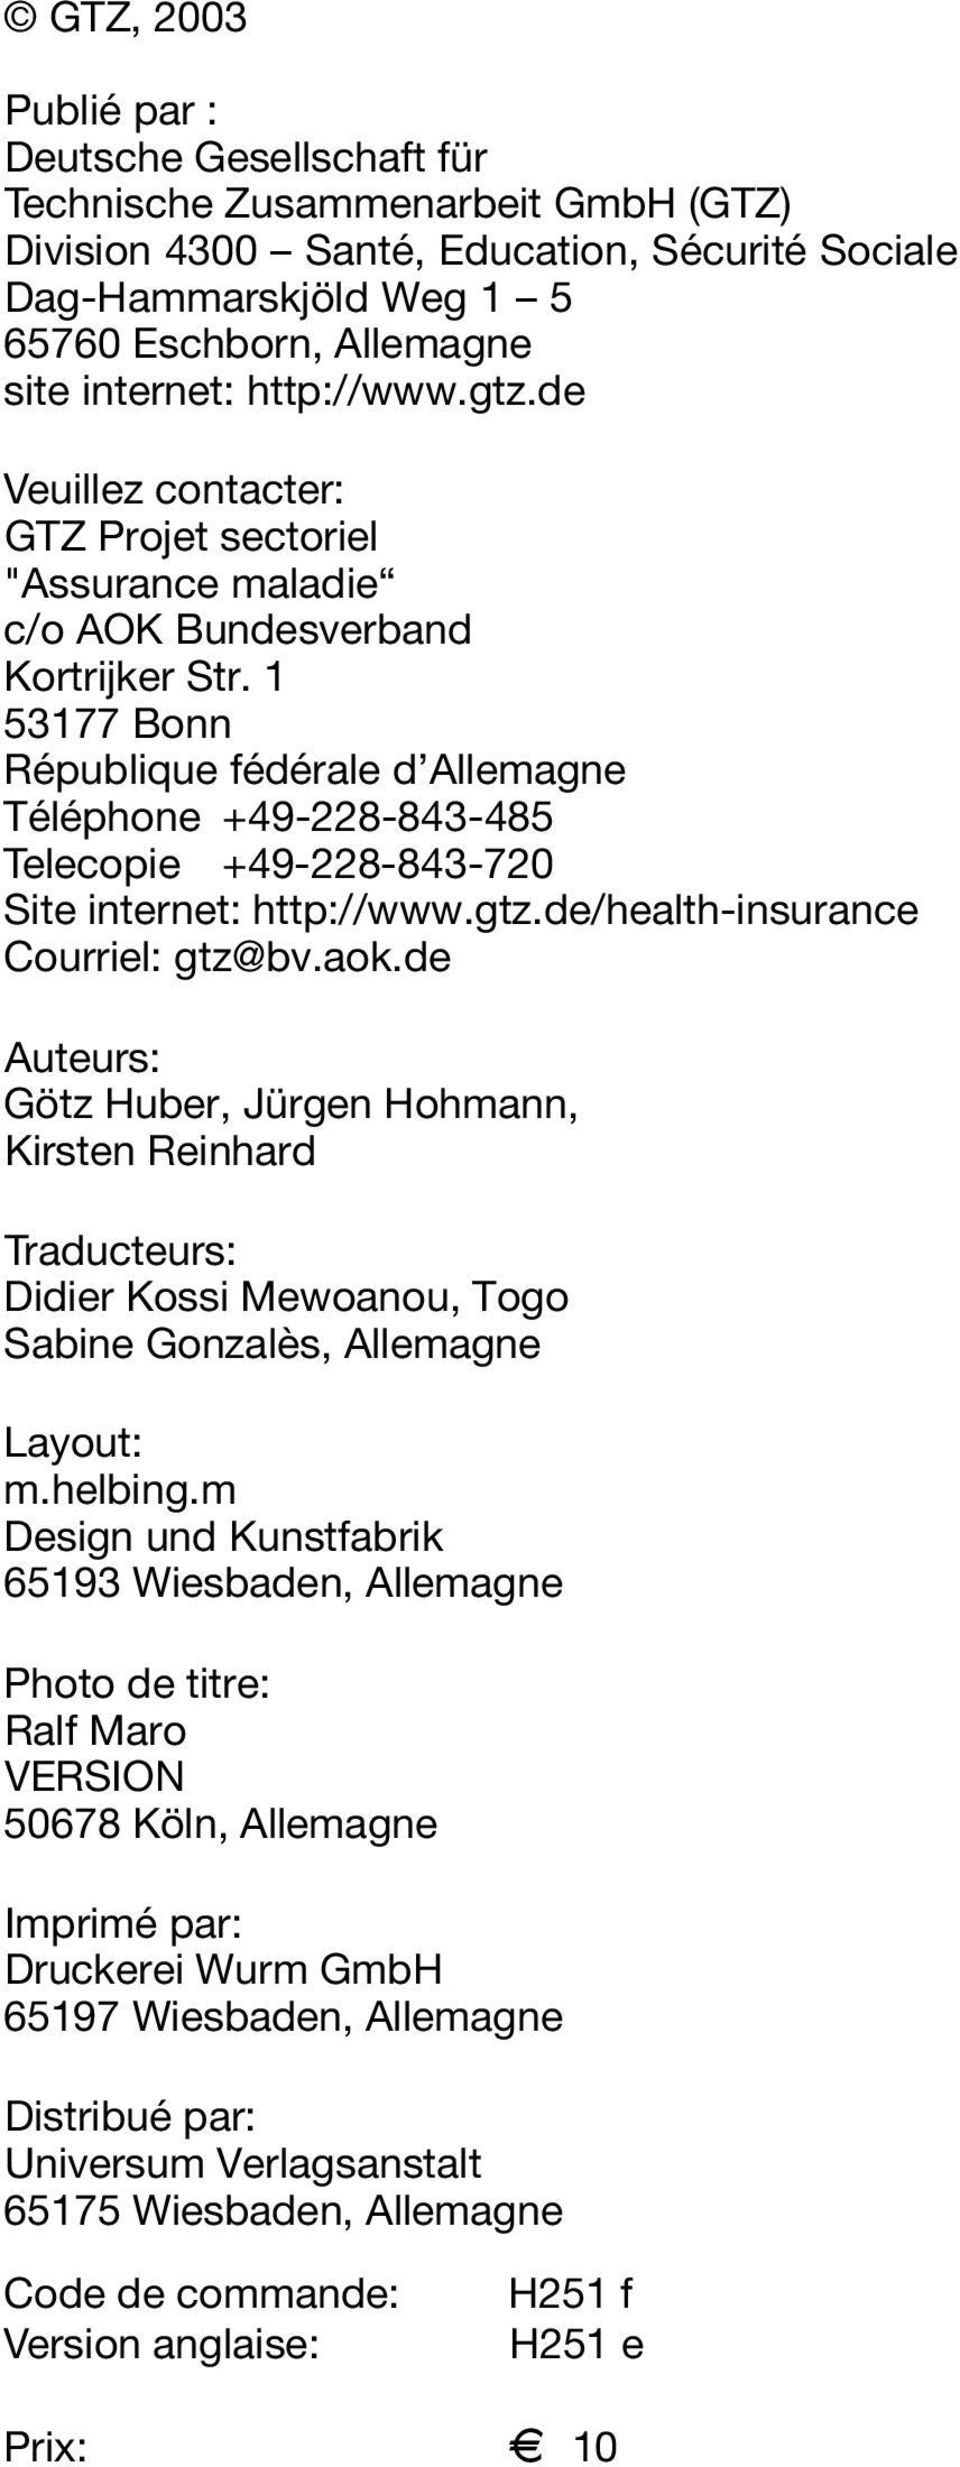 1 53177 Bonn République fédérale d Allemagne Téléphone +49-228-843-485 Telecopie +49-228-843-720 Site internet: http://www.gtz.de/health-insurance Courriel: gtz@bv.aok.